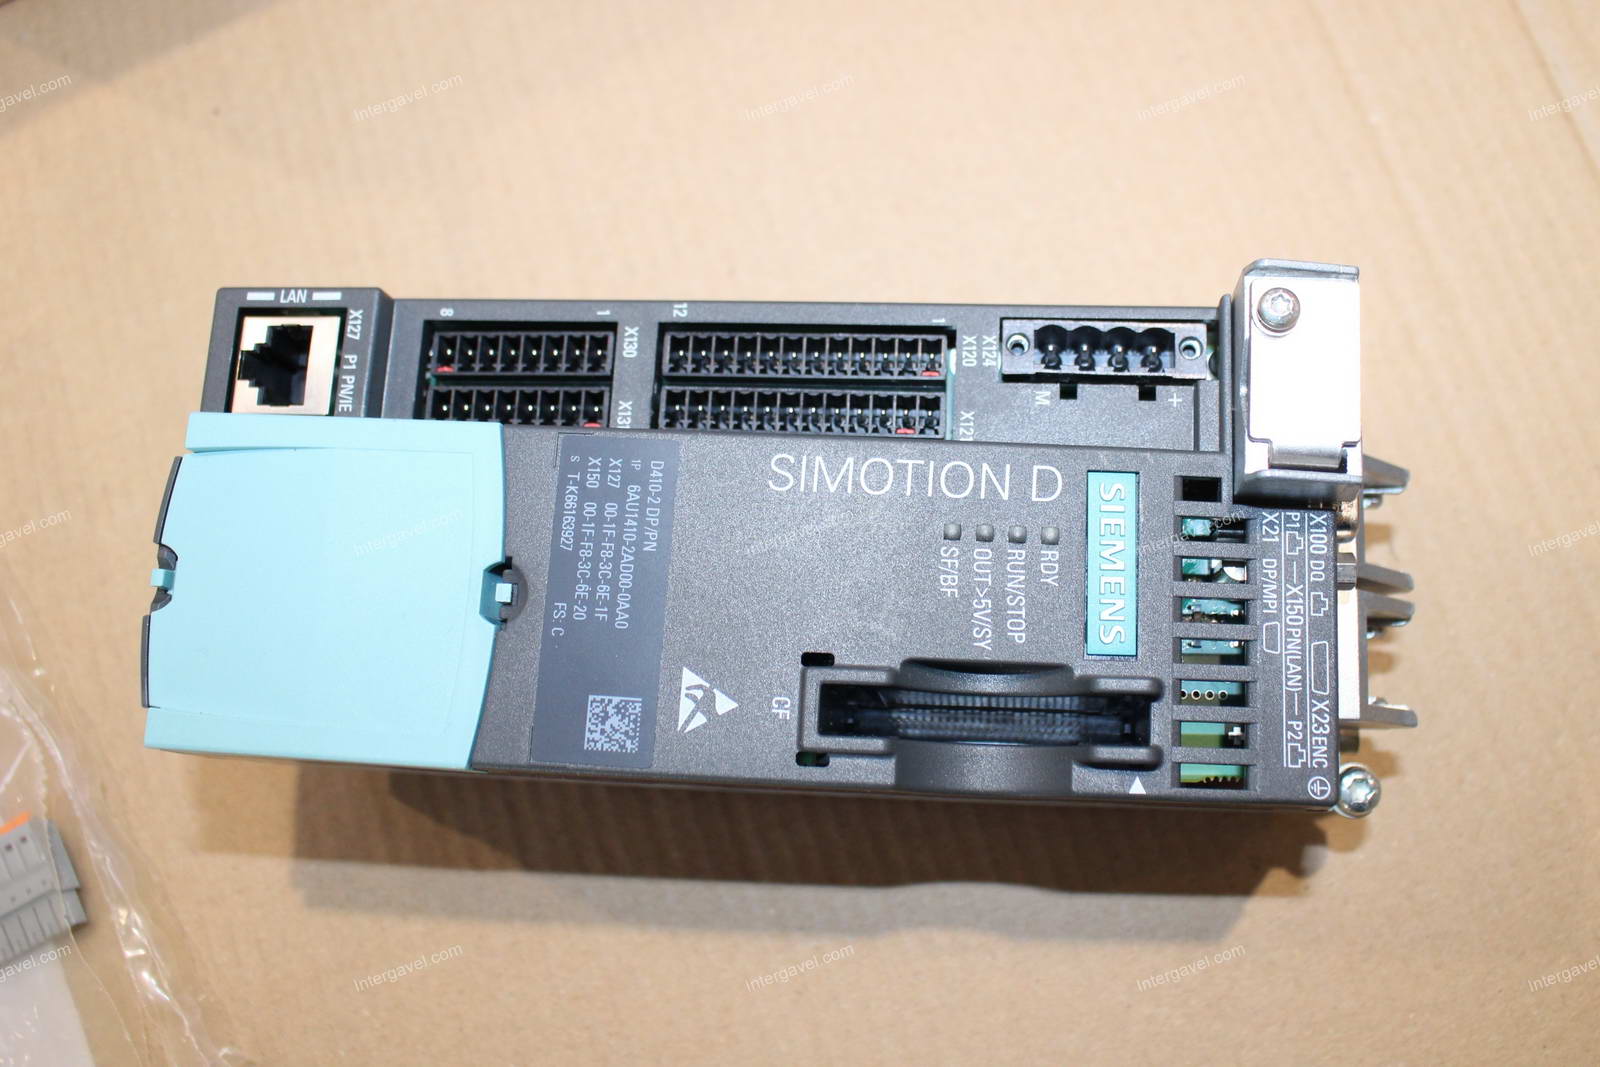 Vezérlő - Siemens, 1P 6AU1410-2AD00-0AA0 és memóriakártya